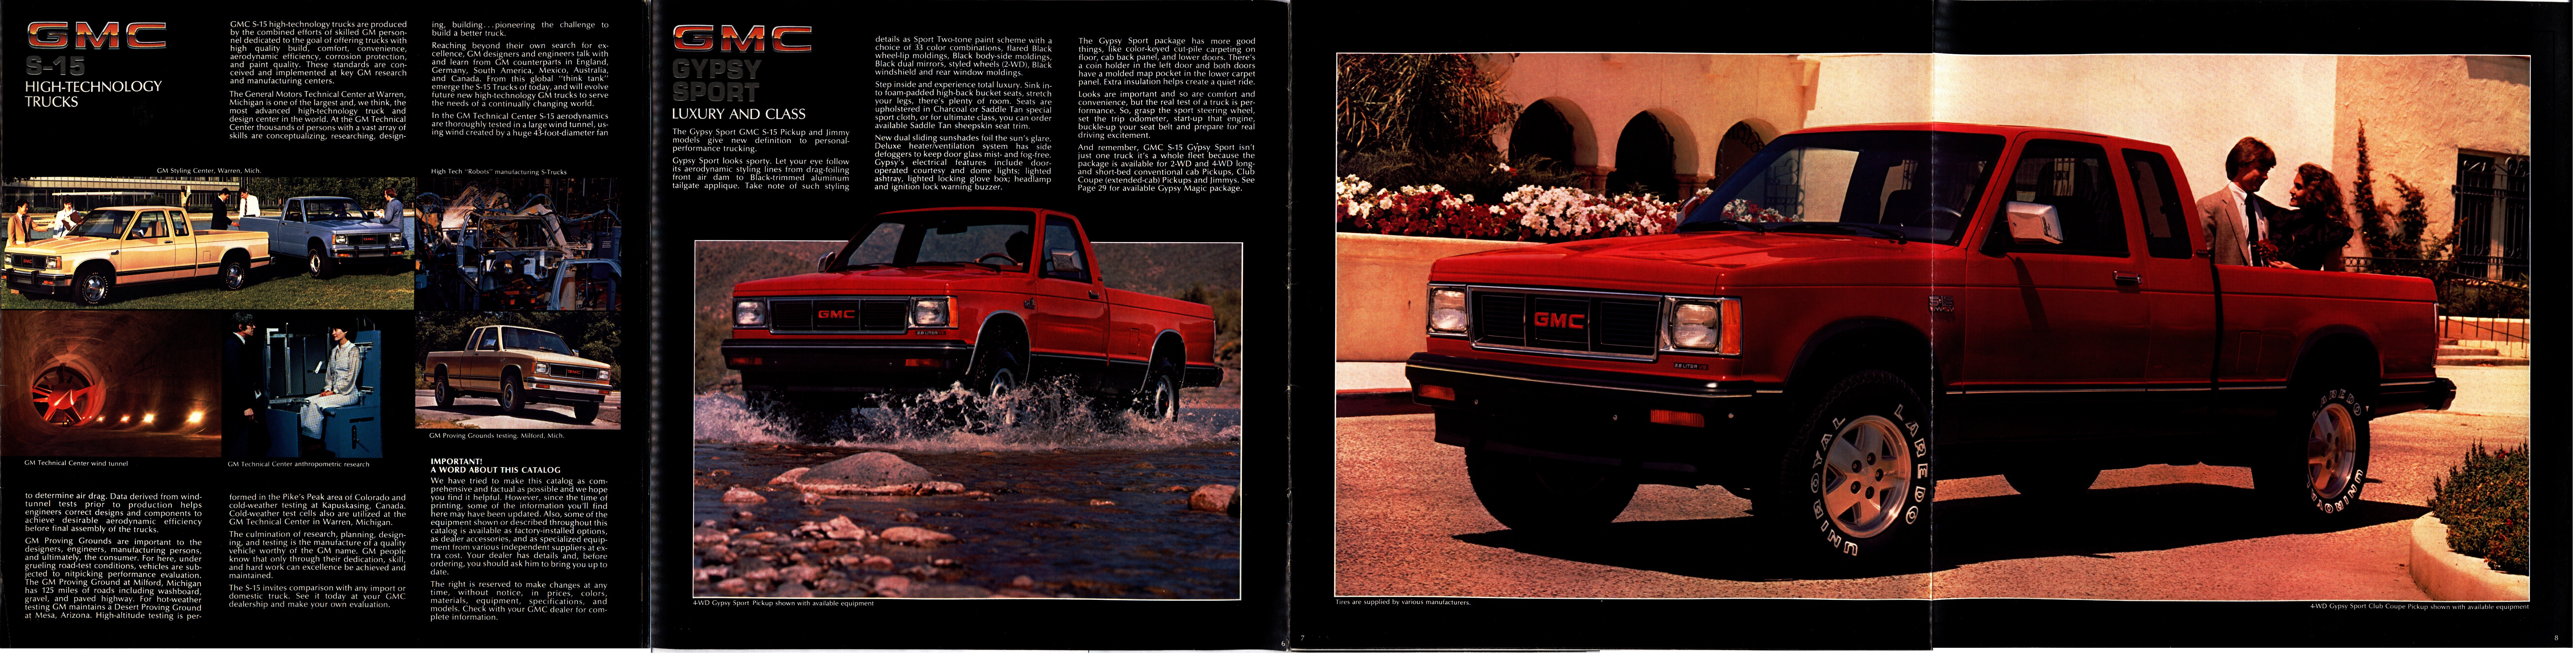 1984 GMC S-15 Pickups Brochure 05-06-07-08